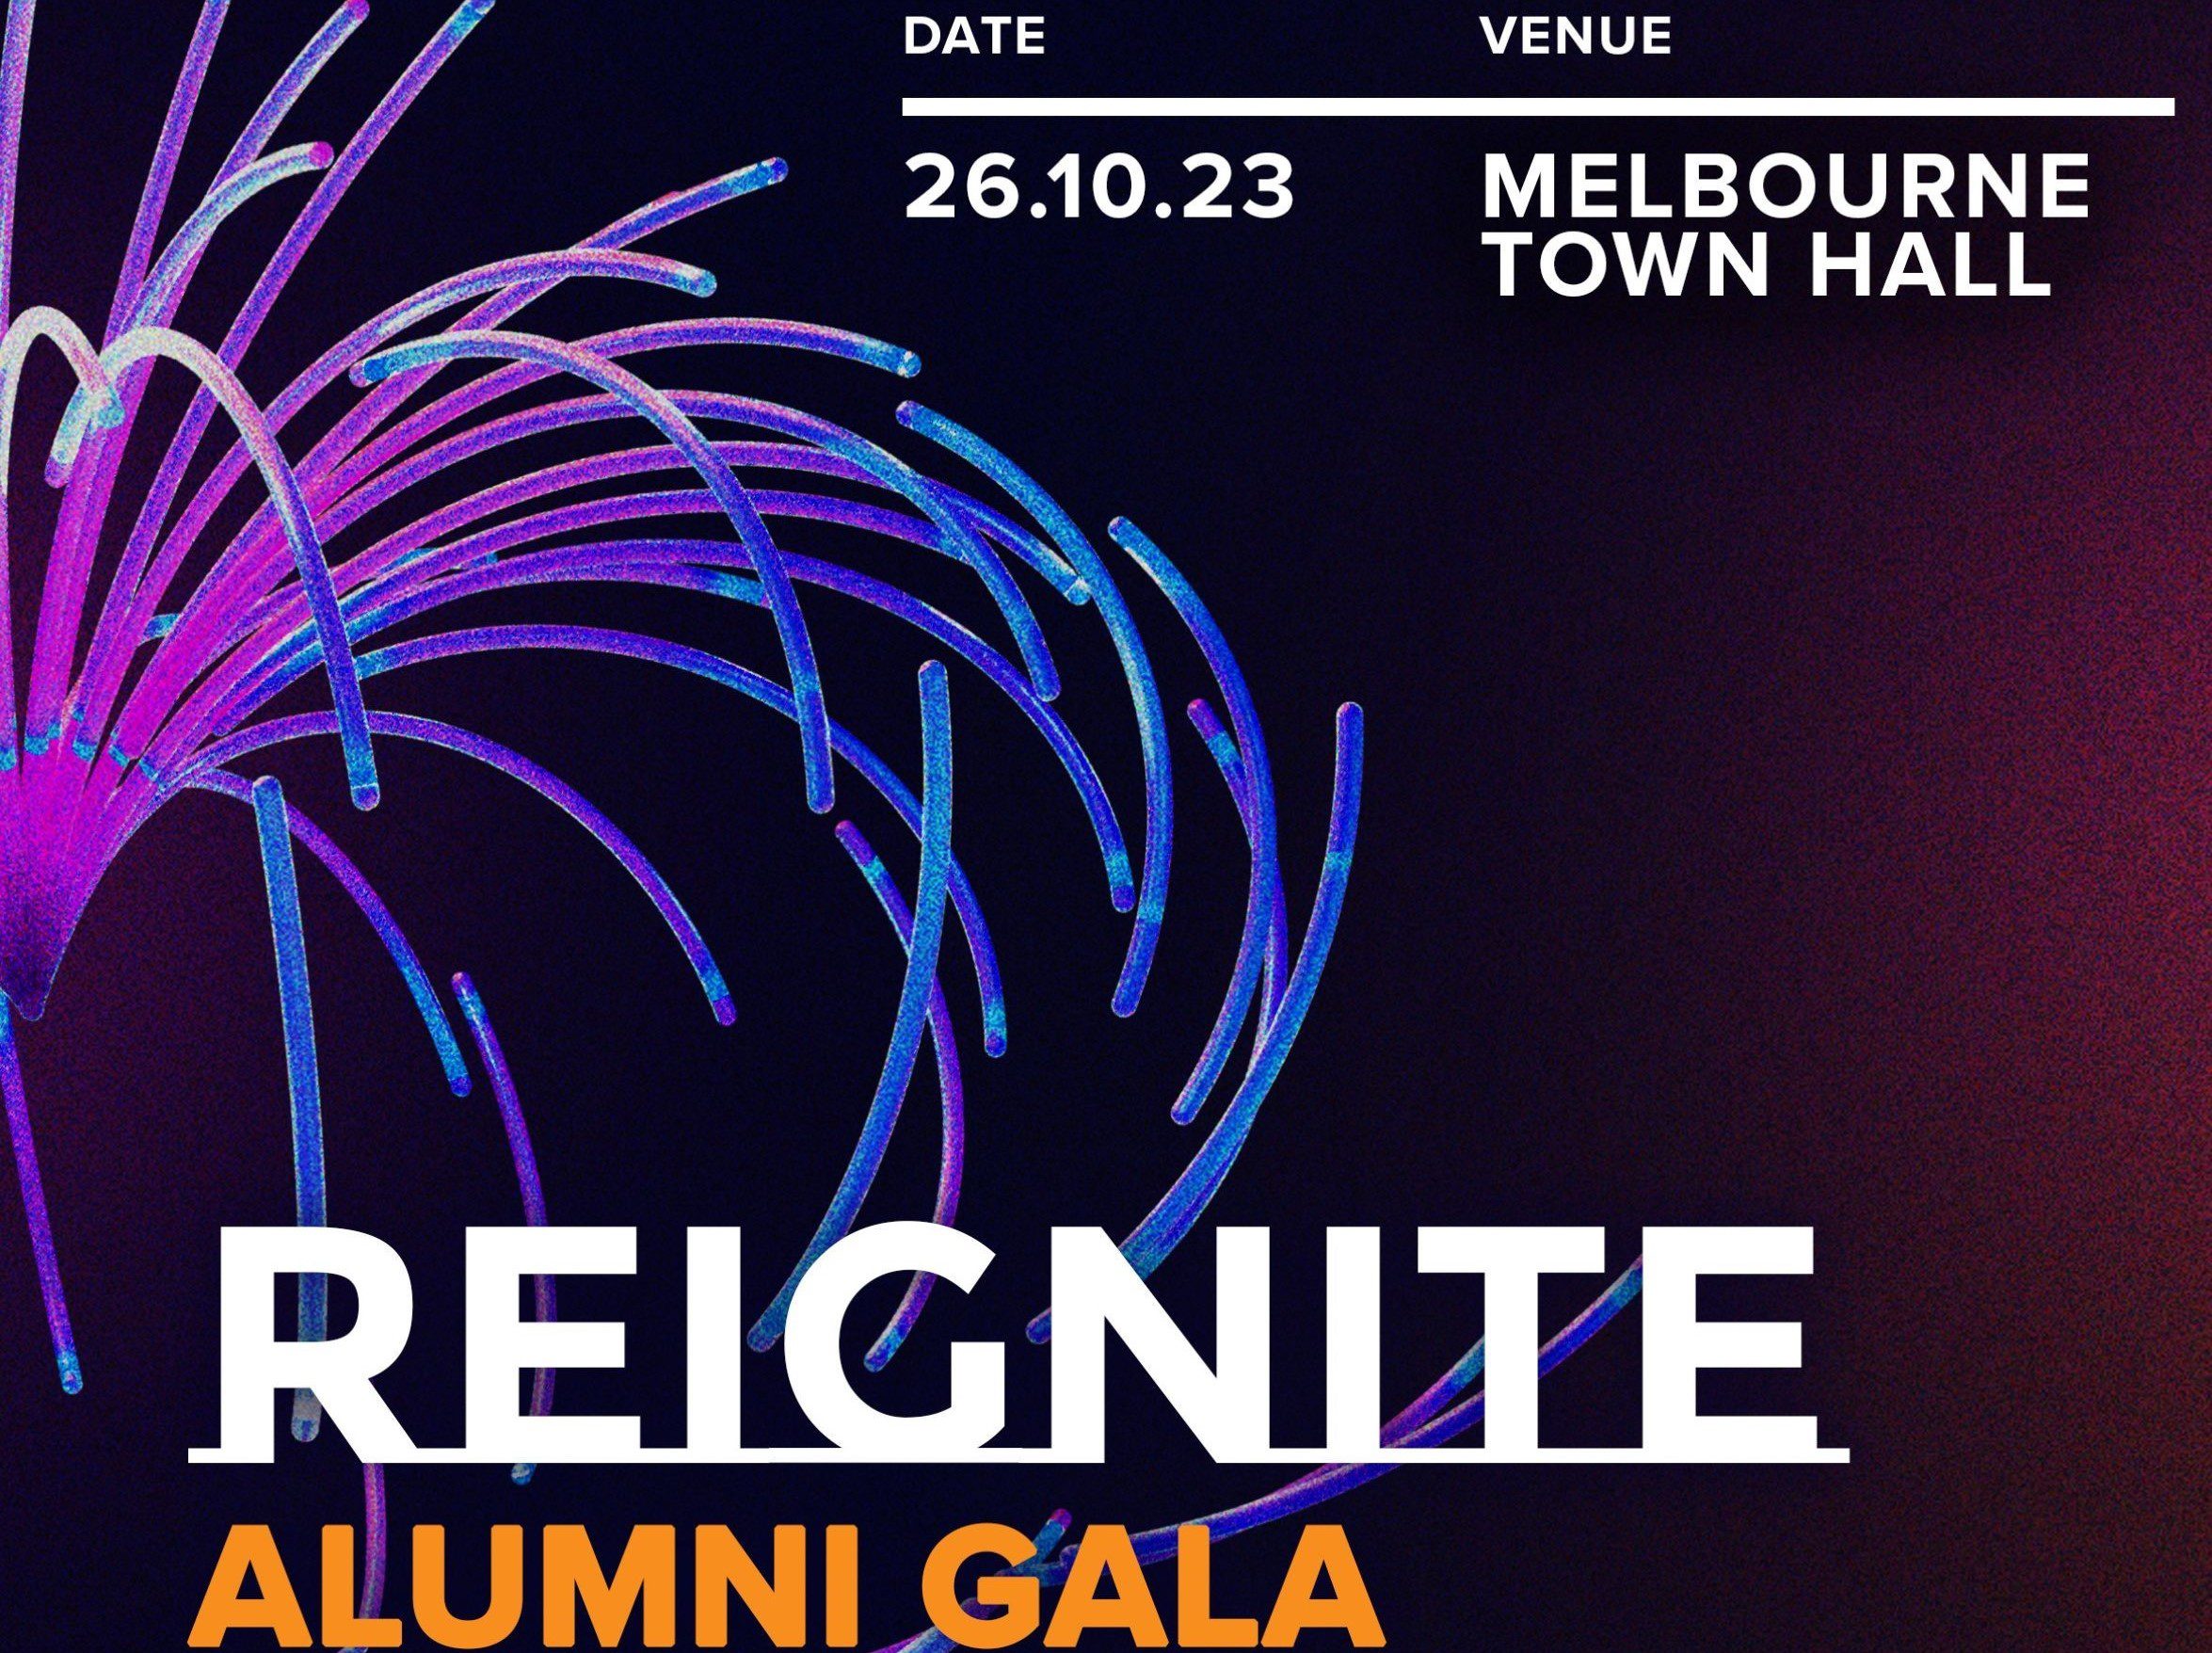 Calling all Leadership Victoria Alumni: You’re Invited to The Reignite Alumni Gala